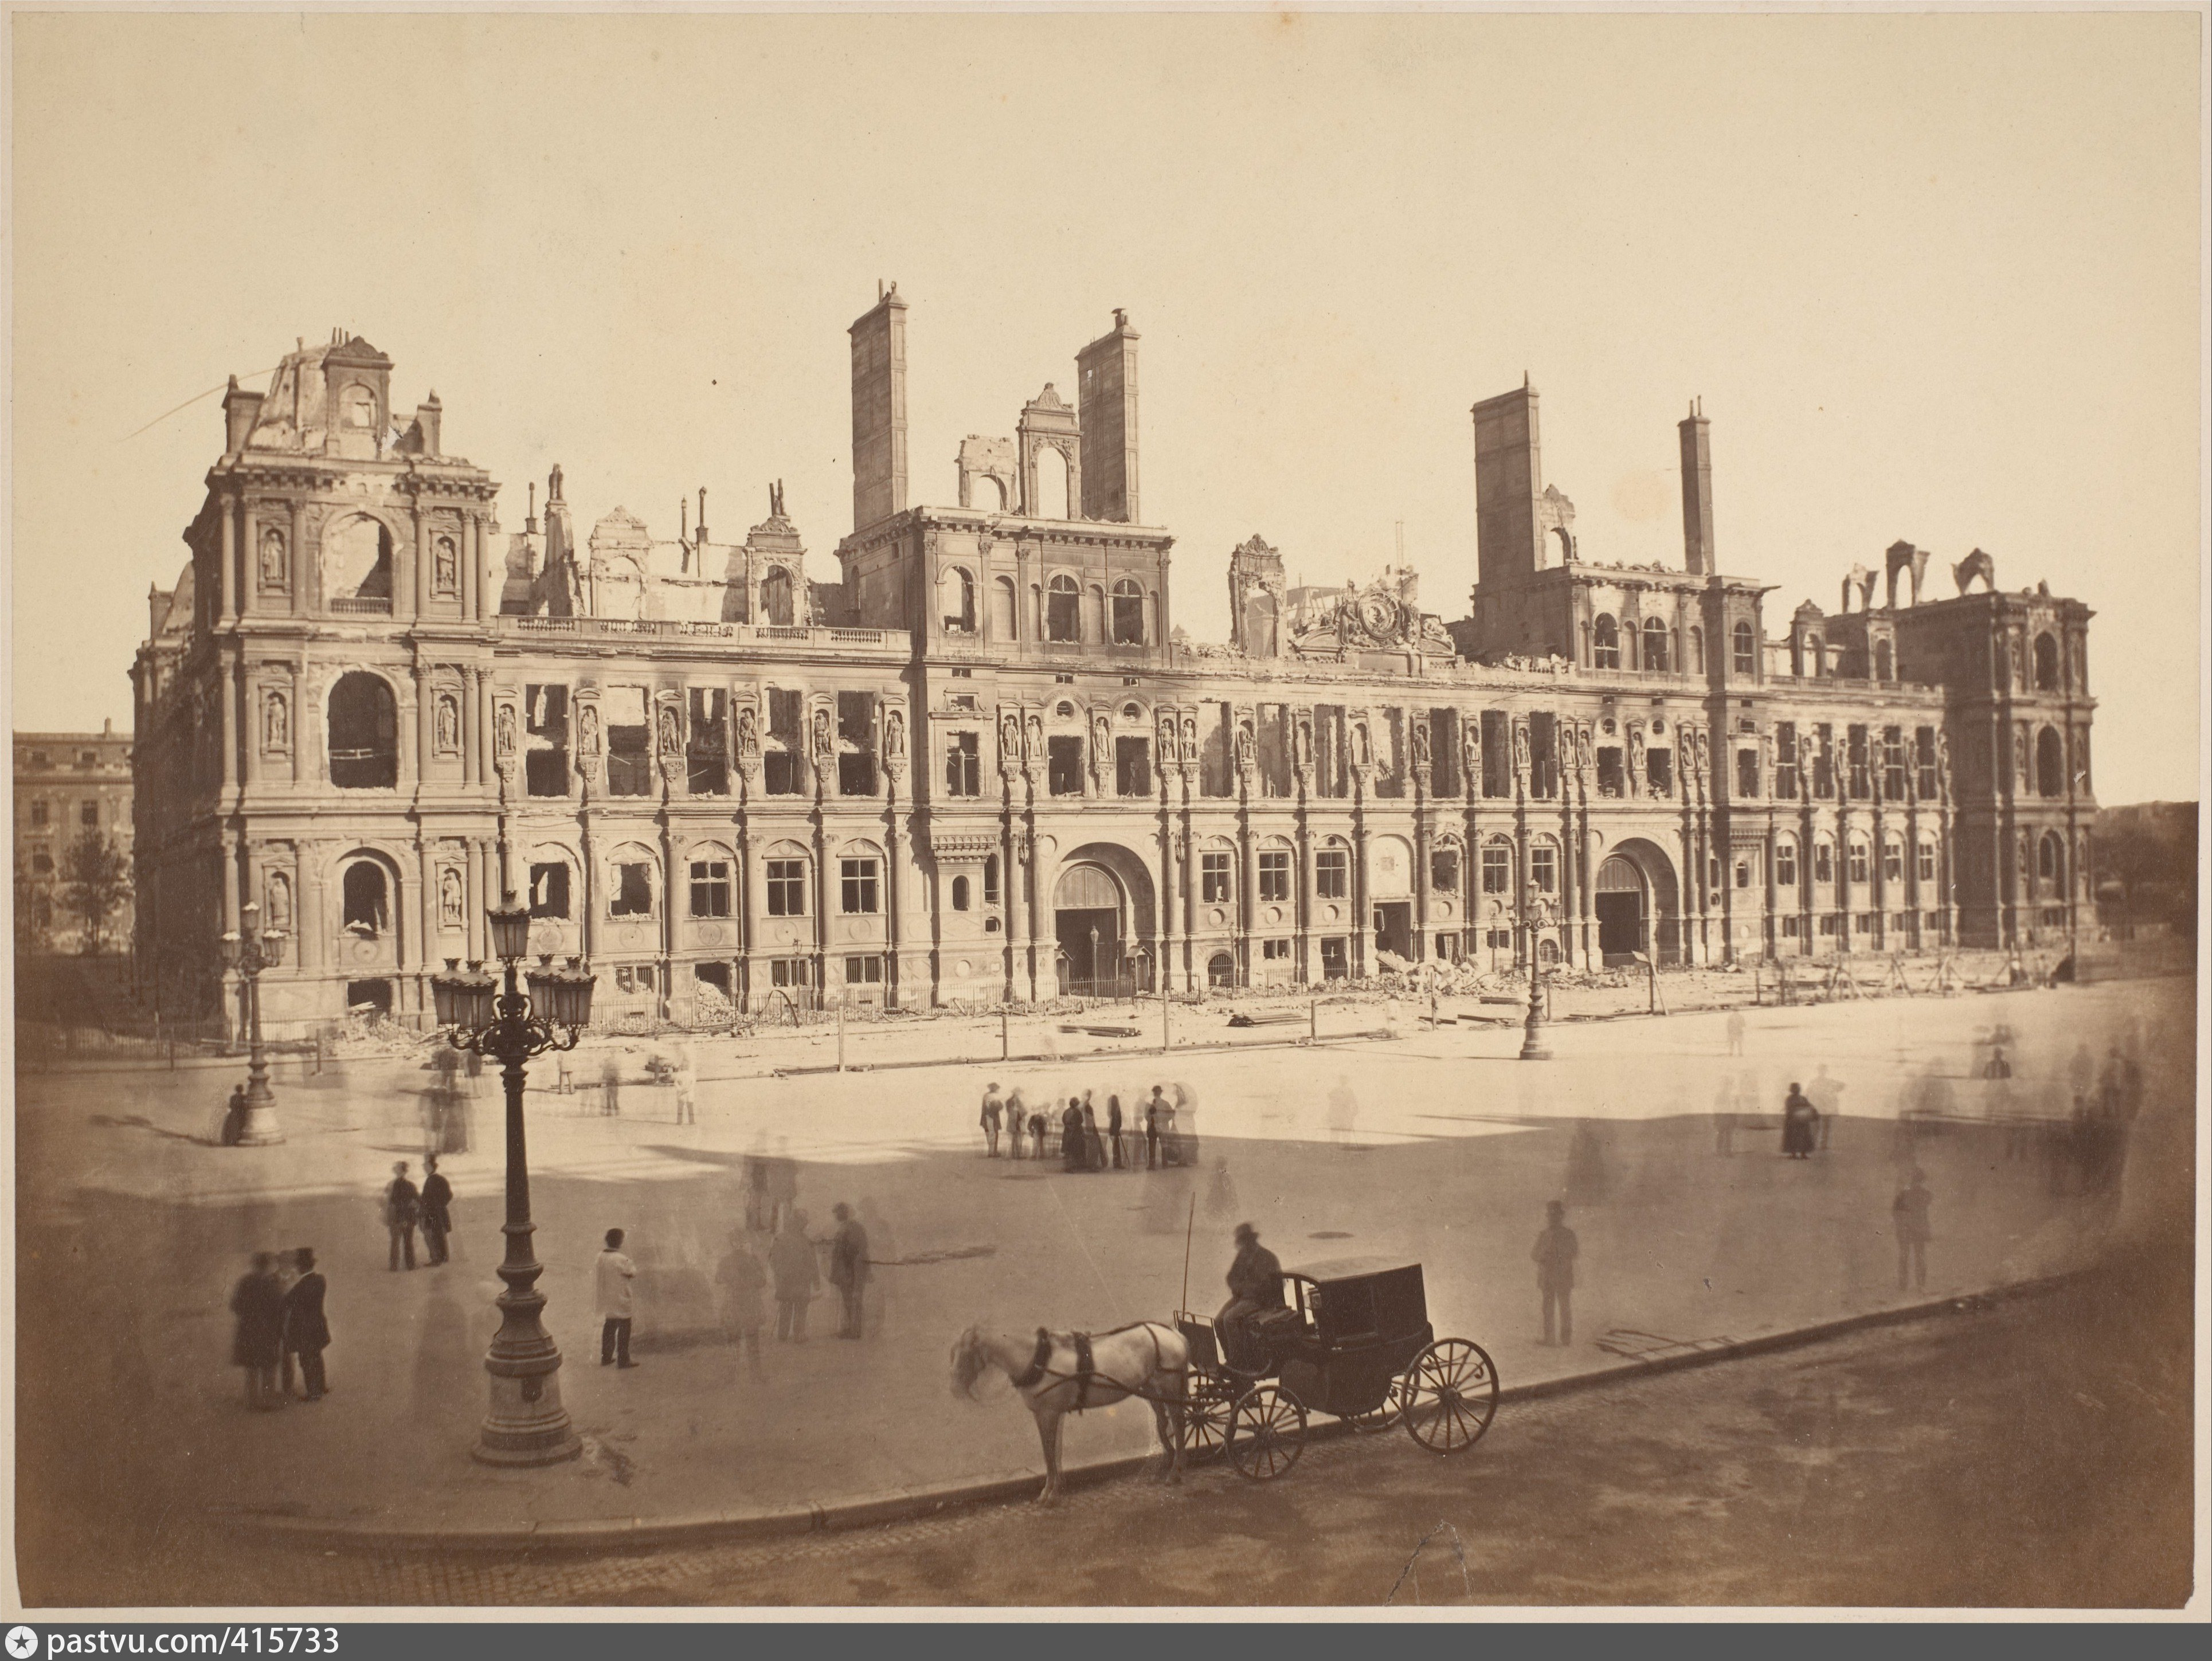 Франция 1800. Отель-де-Виль Париж 1871. Дворец Тюильри в Париже 18 век. Отель де Виль Париж Франция до 1871 года. Лувр 19 век.